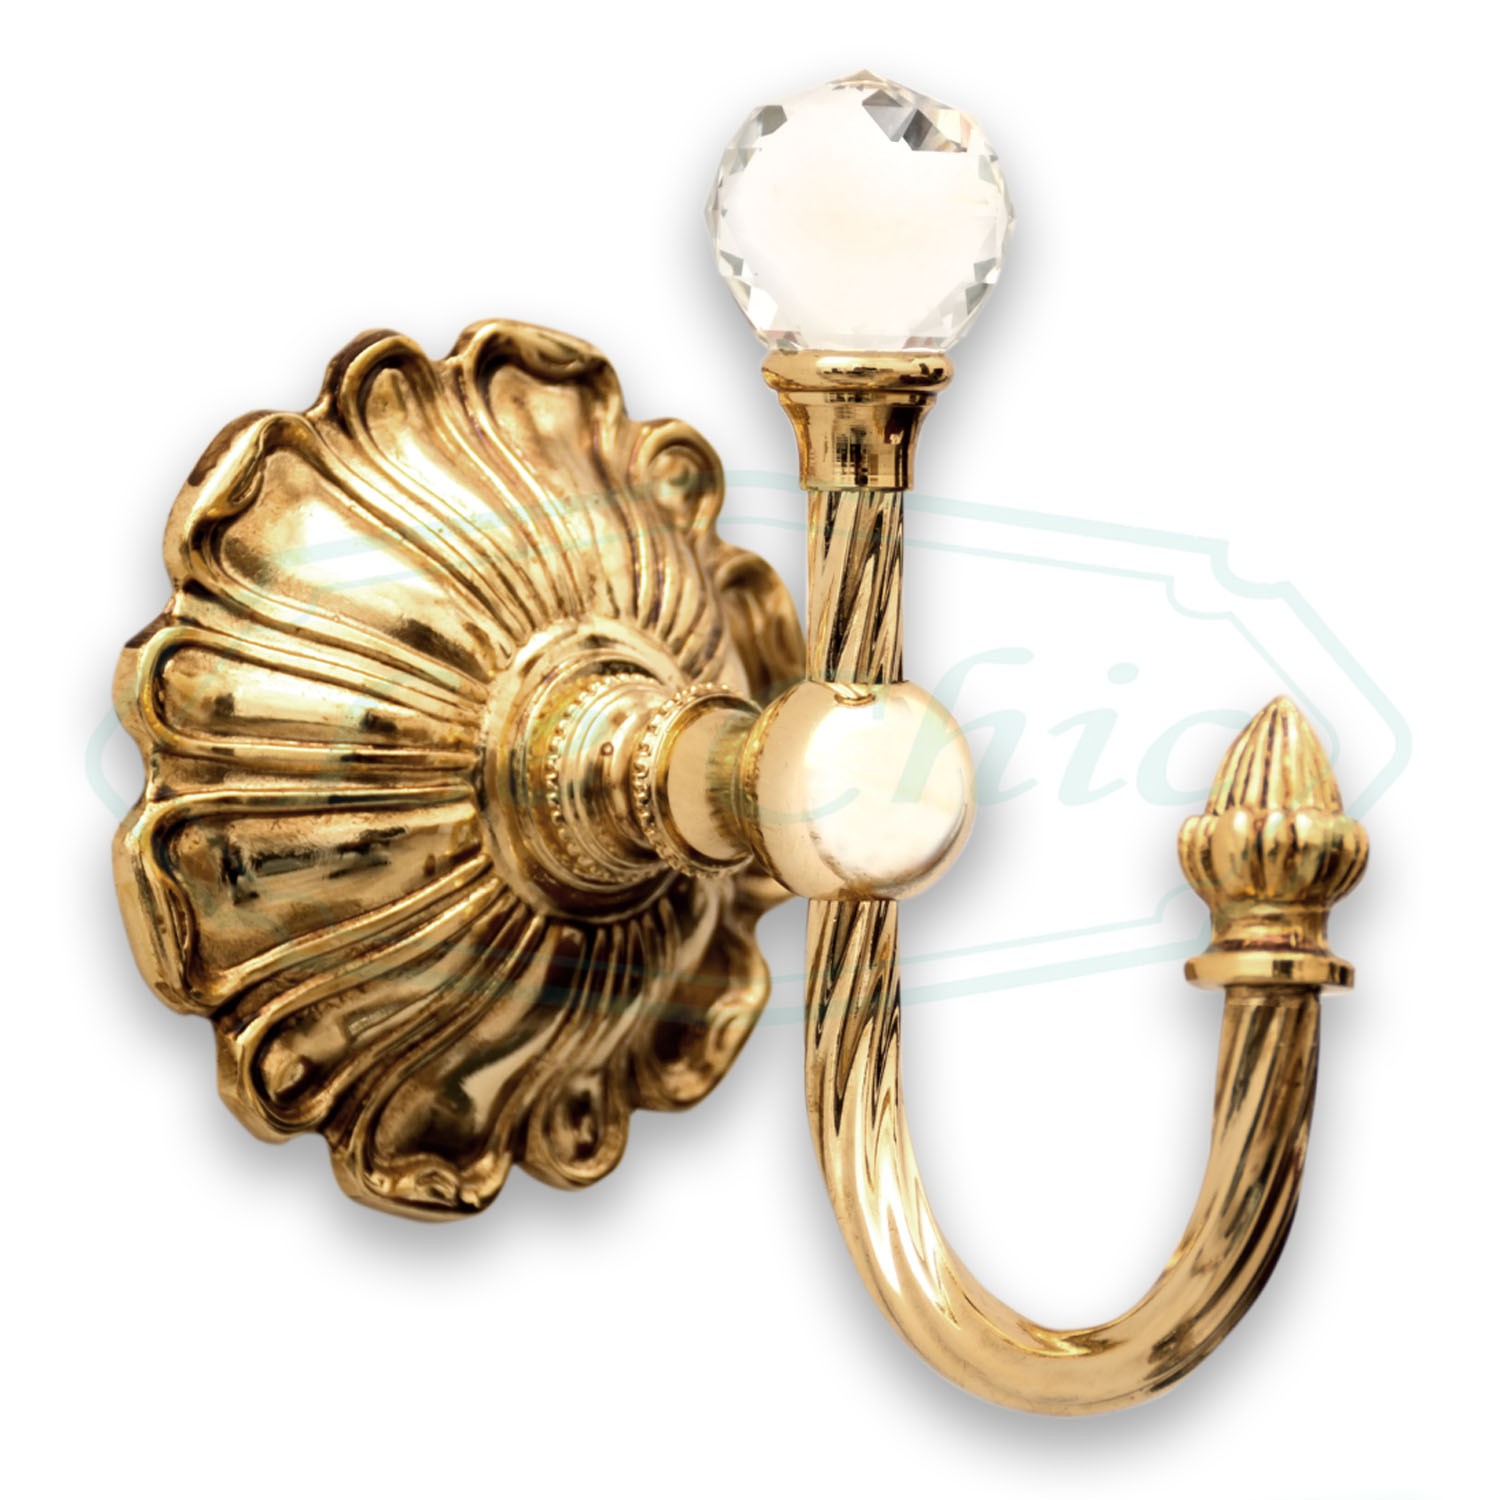 Porta accappatoio gancio appendino in ottone dorato stile barocco e  swarovski - Le Chic Arredamenti